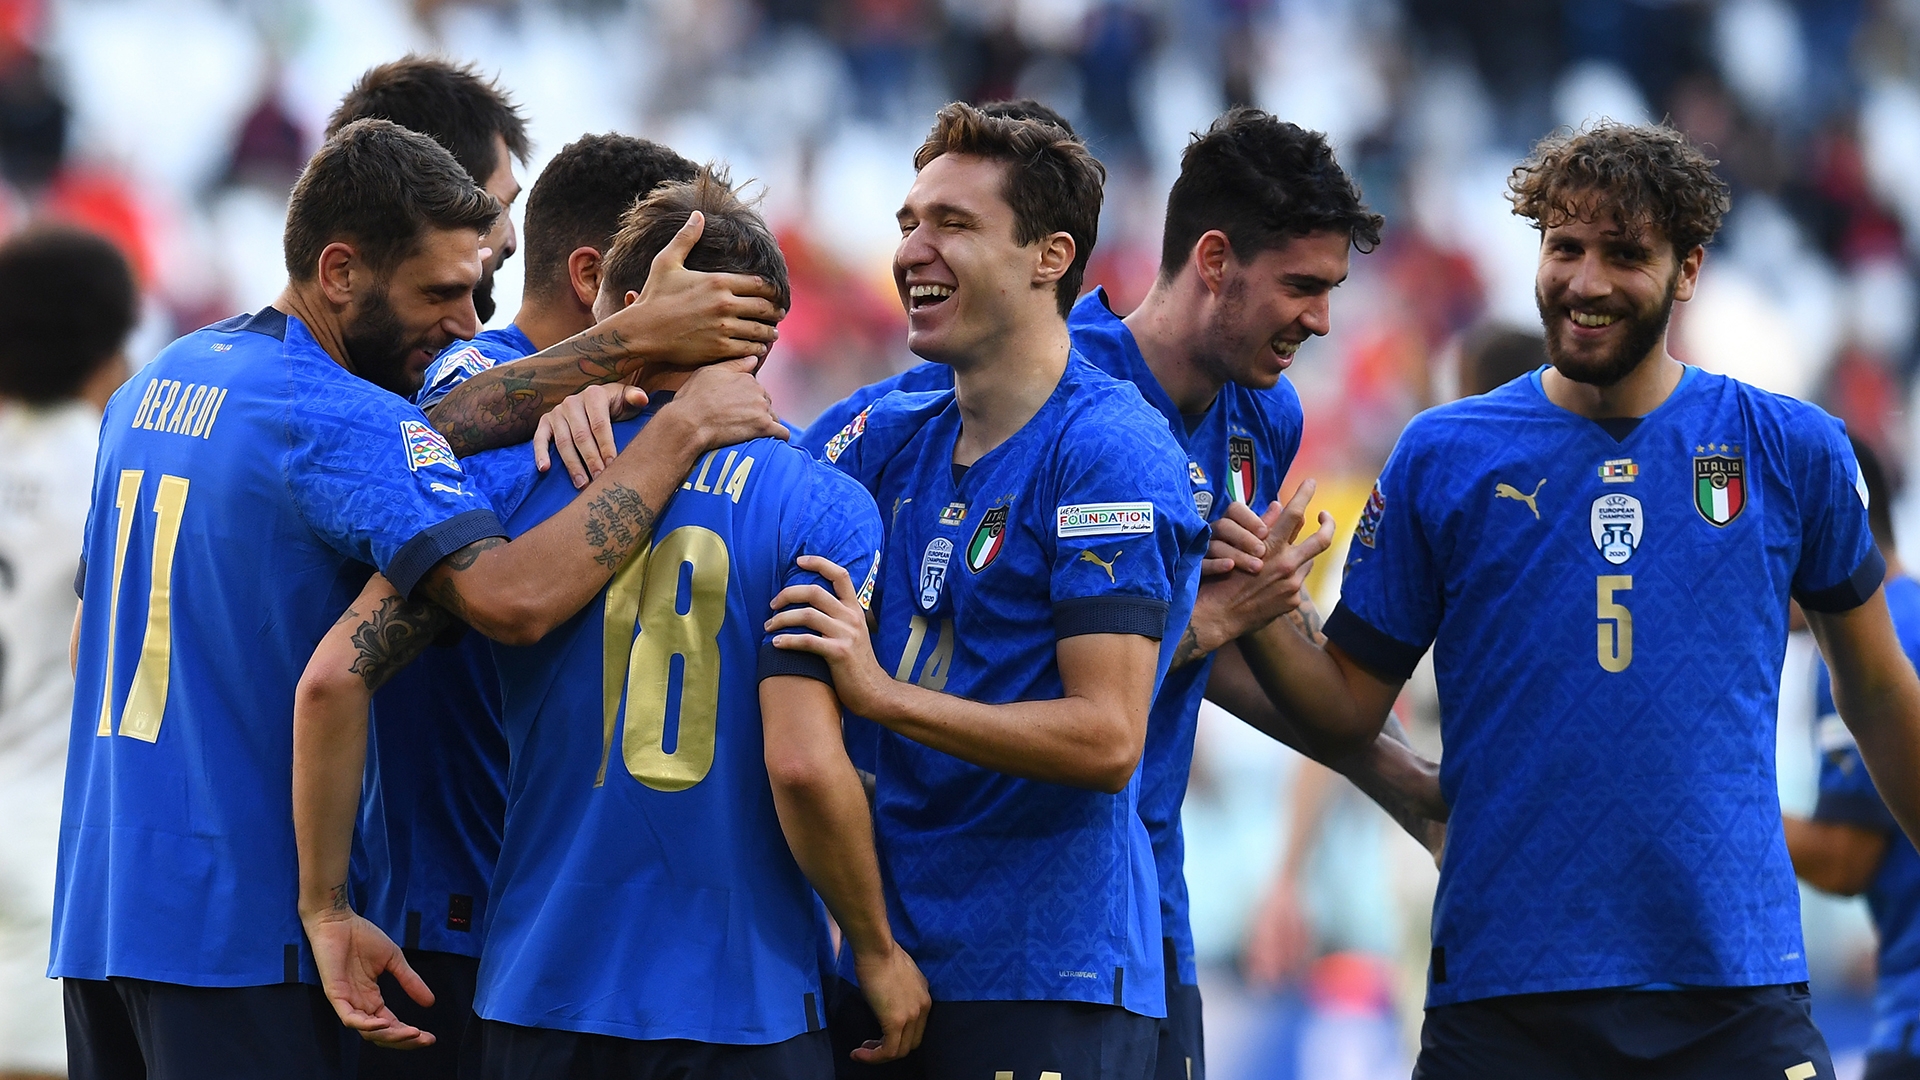 イタリアがベルギーを撃破 ネーションズリーグ3位の座を手に Goal Com